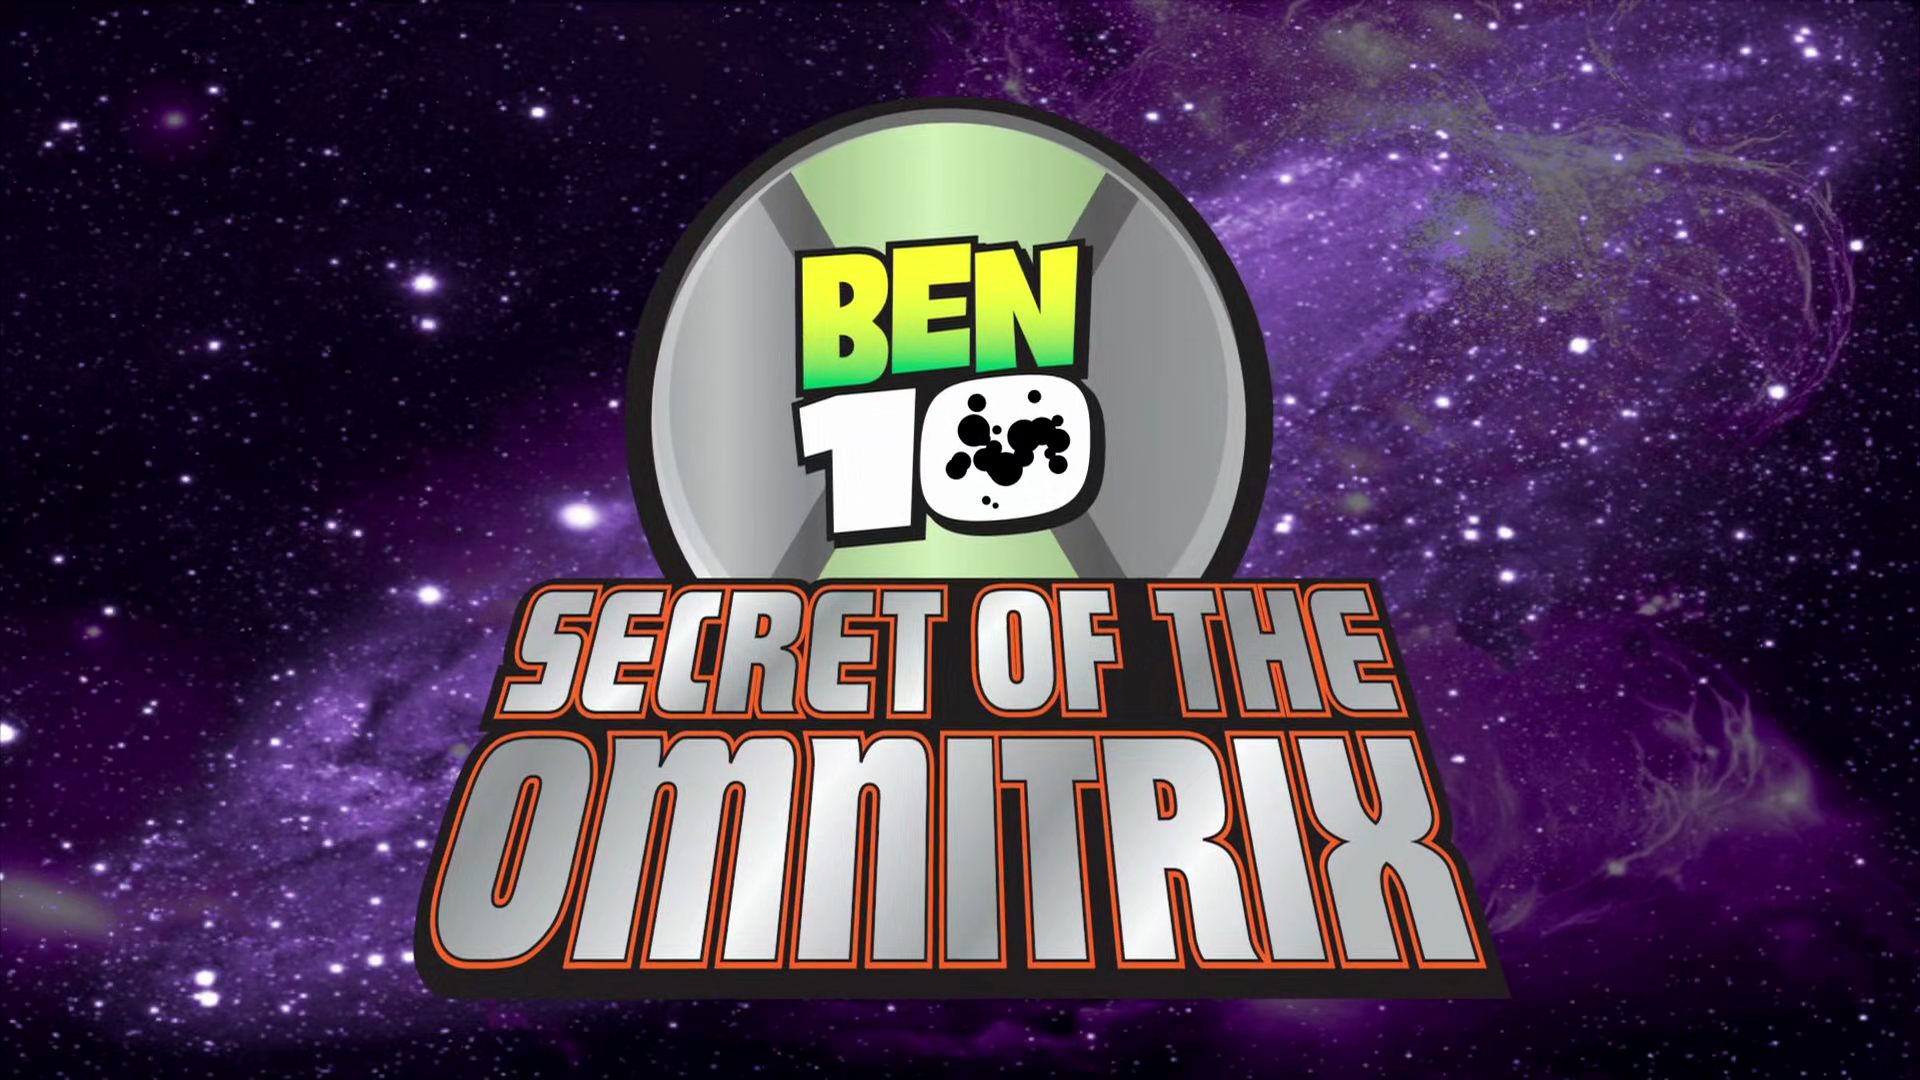 Omnitrix, ben 10000, ben 10 Secret Of The Omnitrix, Ben 10 Alien Force, ben  10 Ultimate Alien, ben 10 Omniverse, ben 10, Action fiction, personal  Protective Equipment, Painting